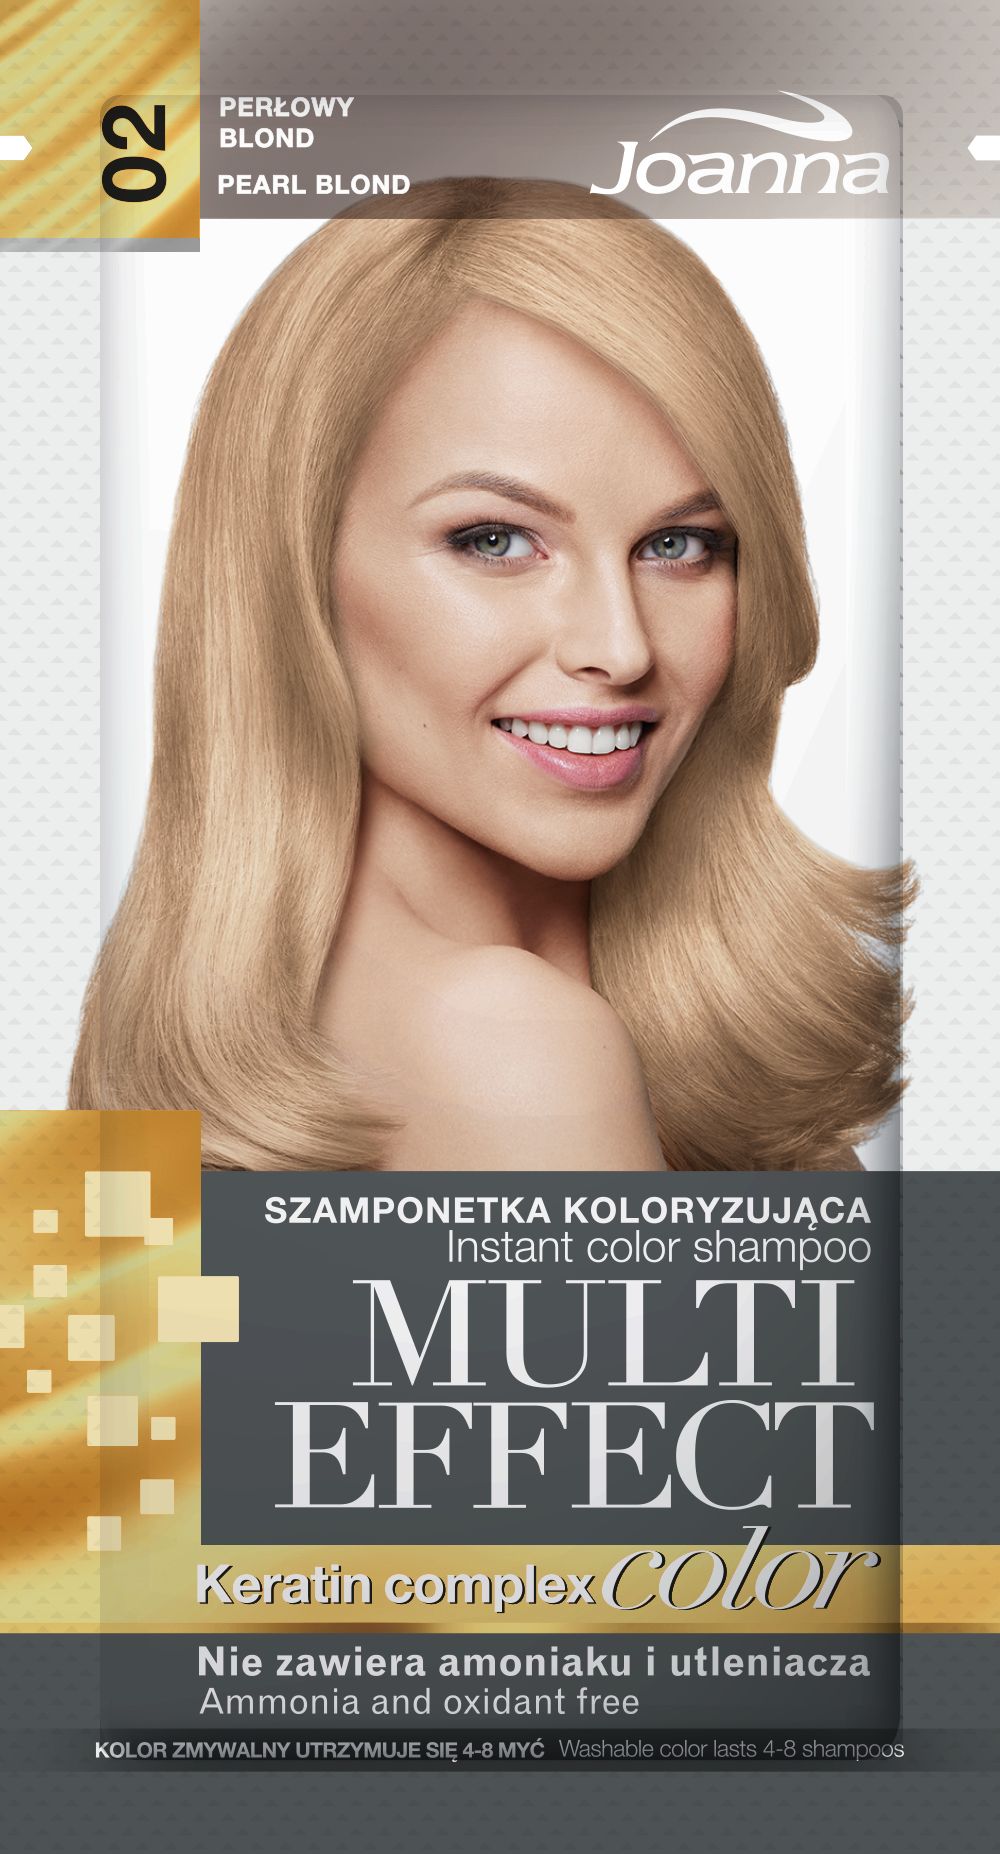 Joanna Multi Effect Szamponetka koloryzująca 02 Perłowy Blond, 30g 